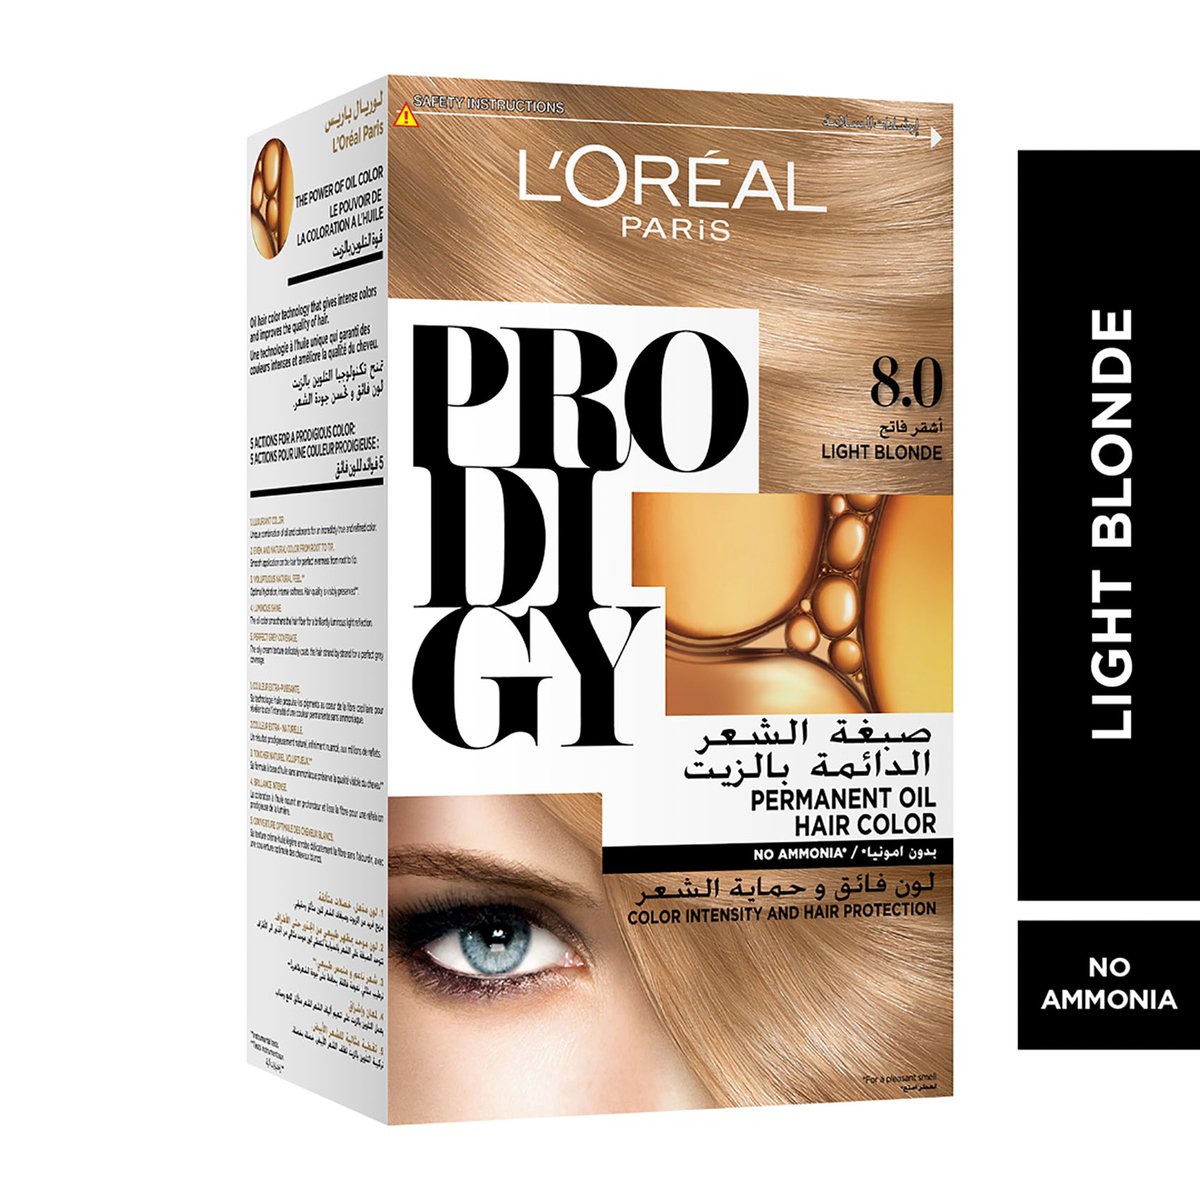 L'Oreal Paris Prodigy Hair Color 8.0 Light Blonde 1 pkt